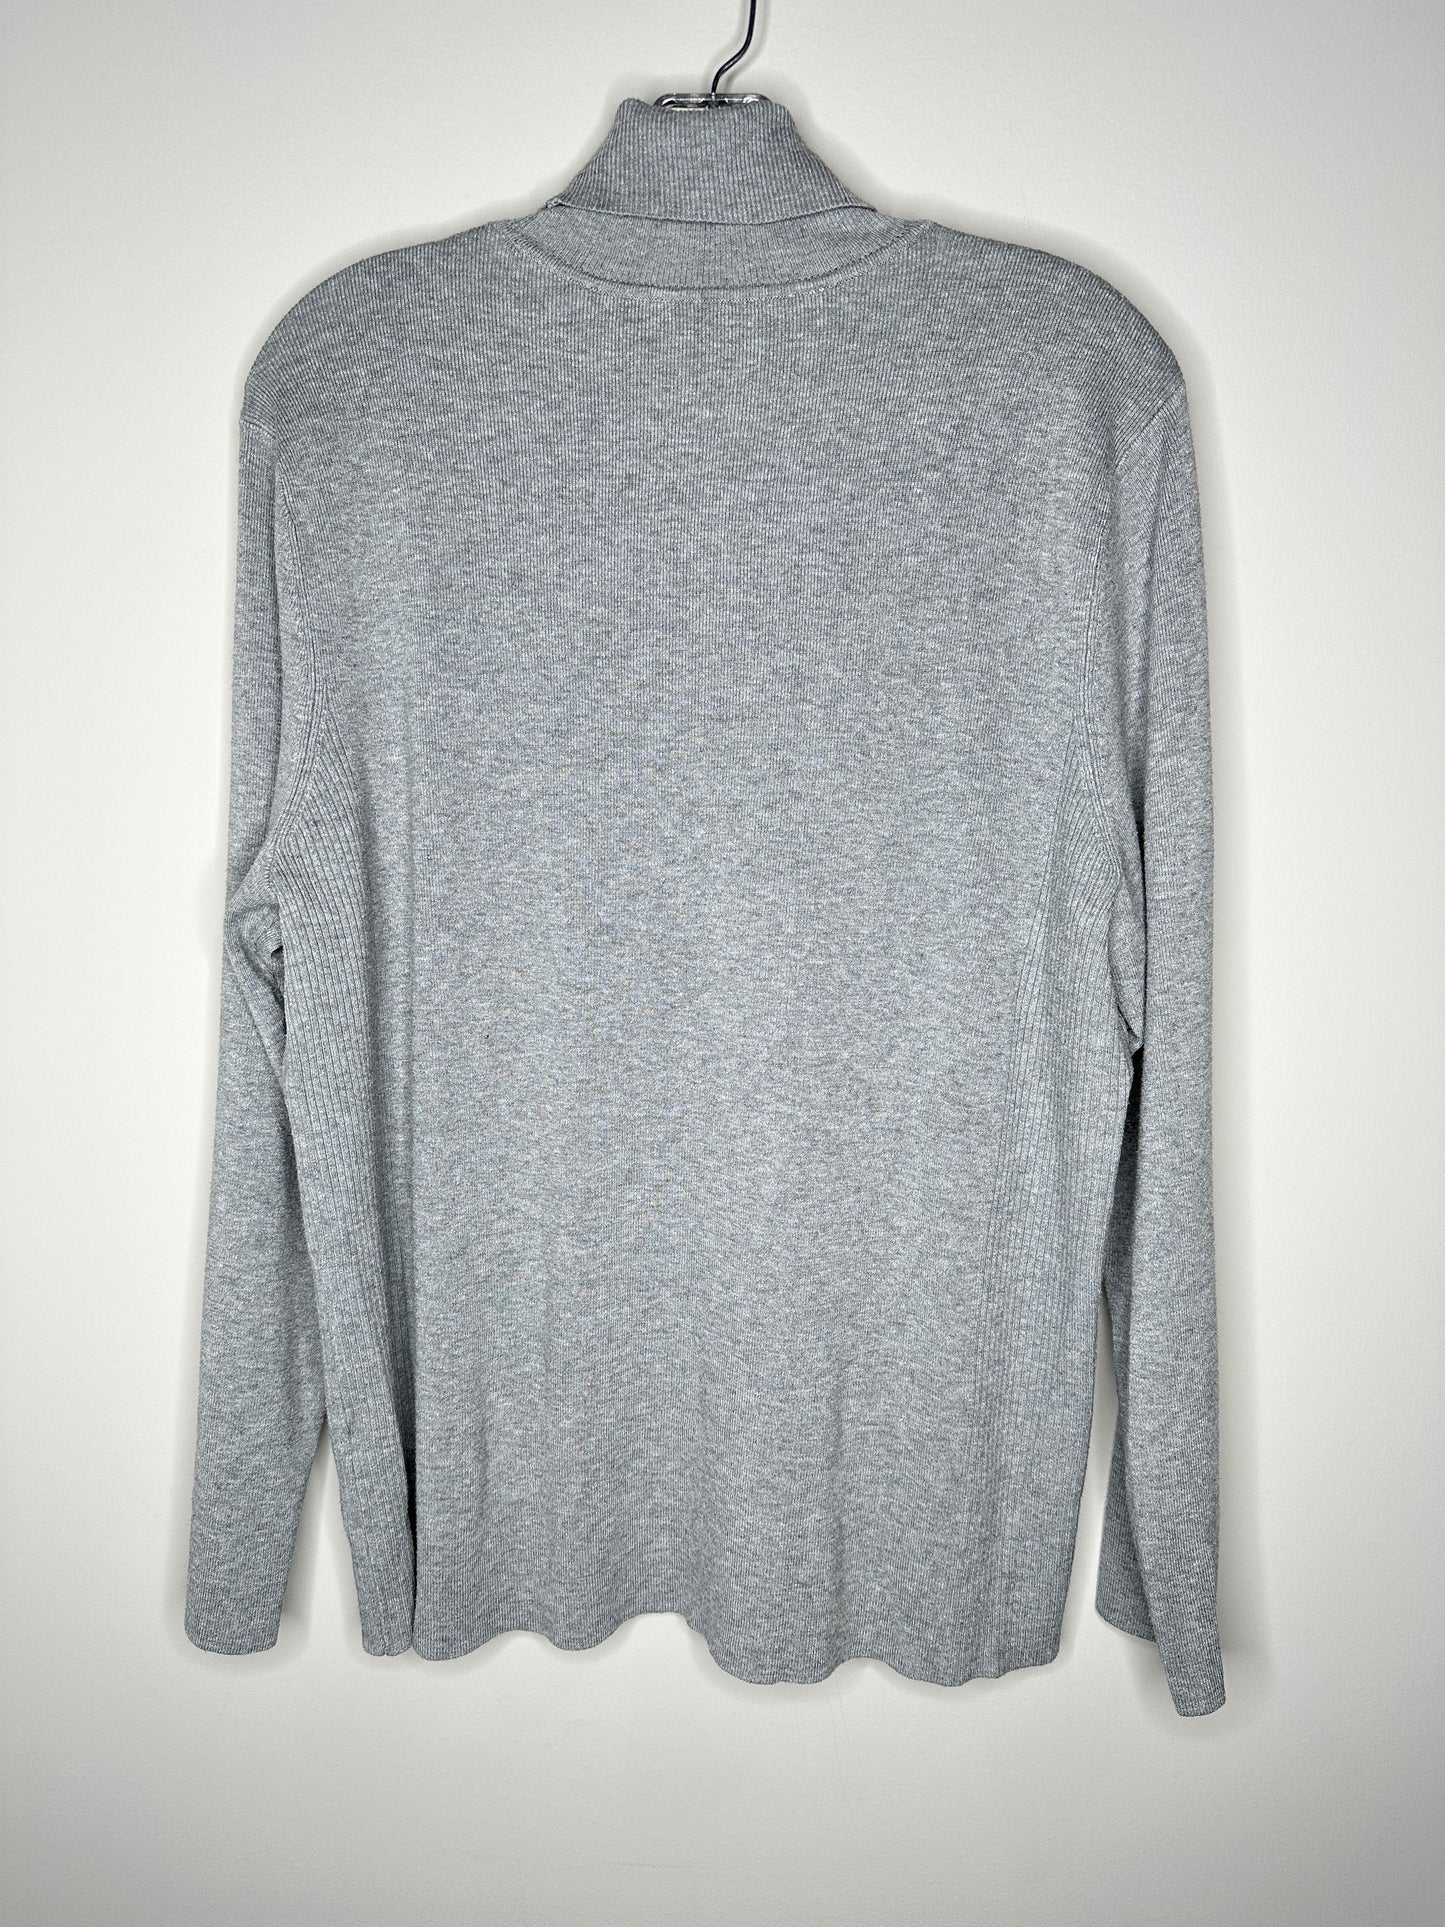 Chico's Size 4 (XXL, 20-22) Gray Turtleneck Sweater